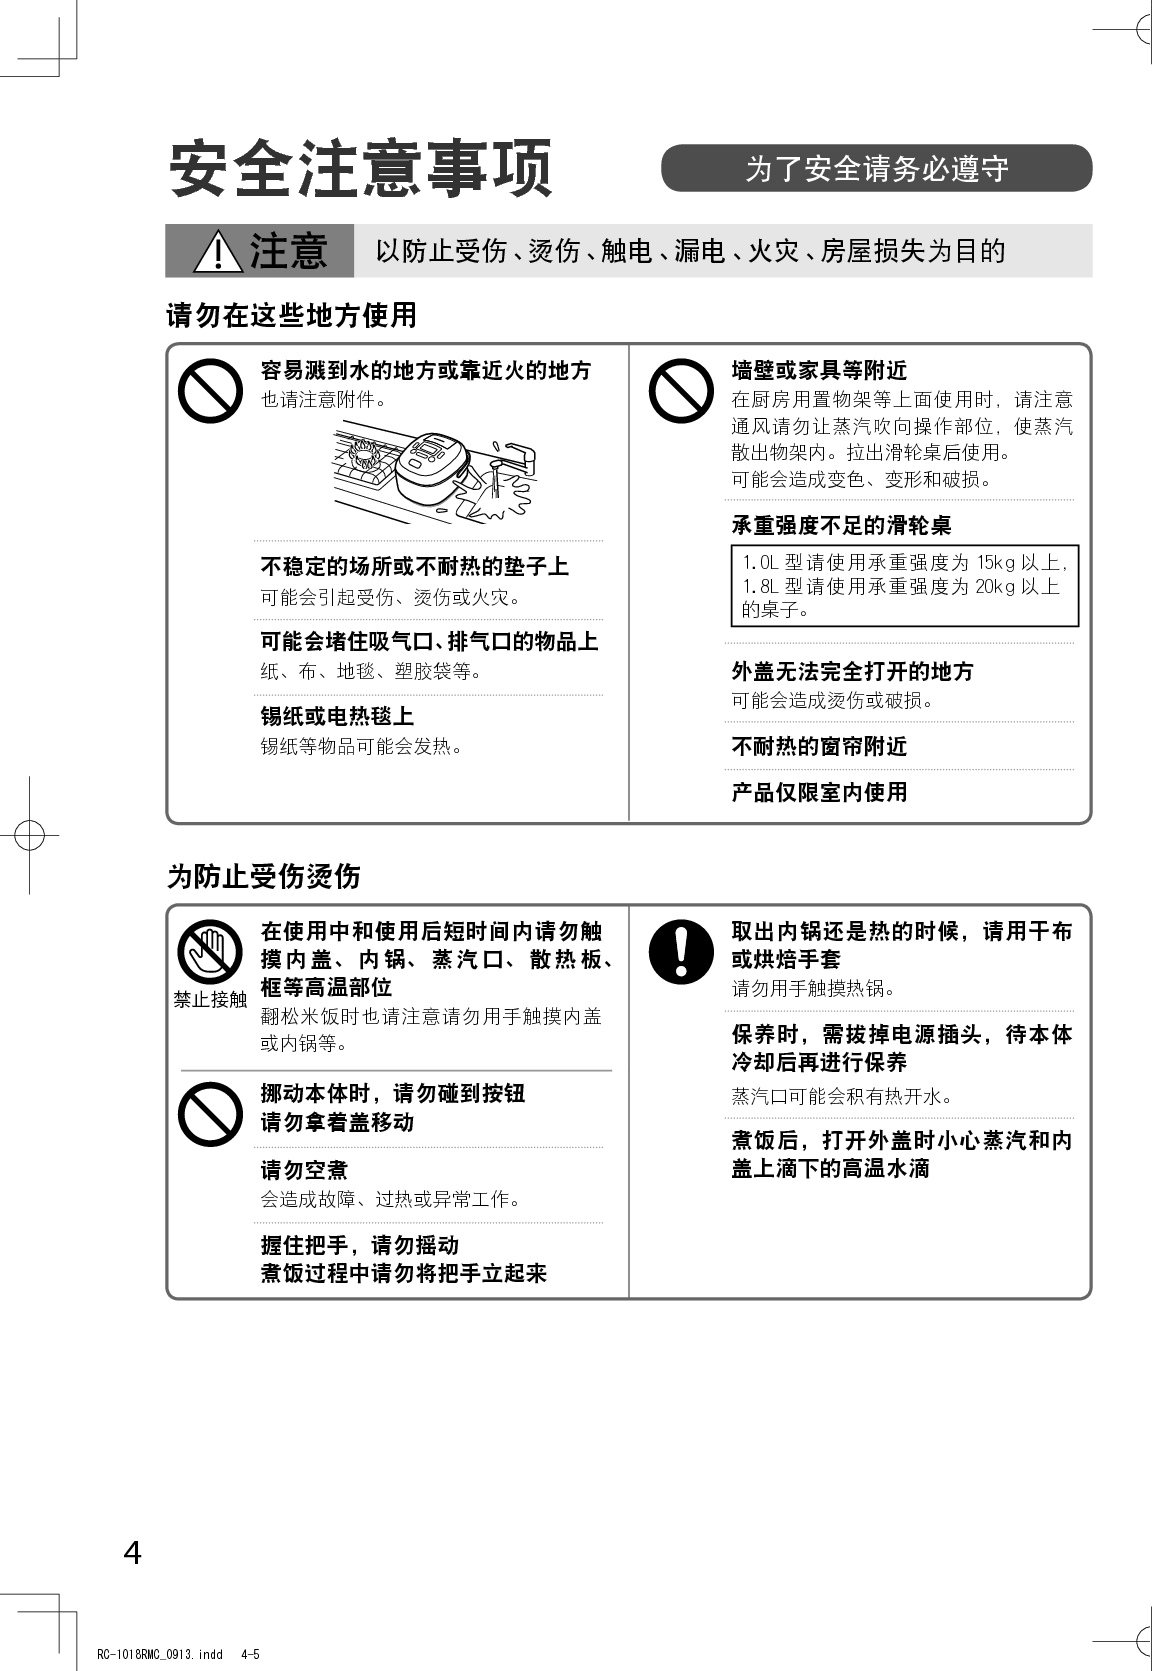 东芝 Toshiba RC-10RMC 使用说明书 第2页